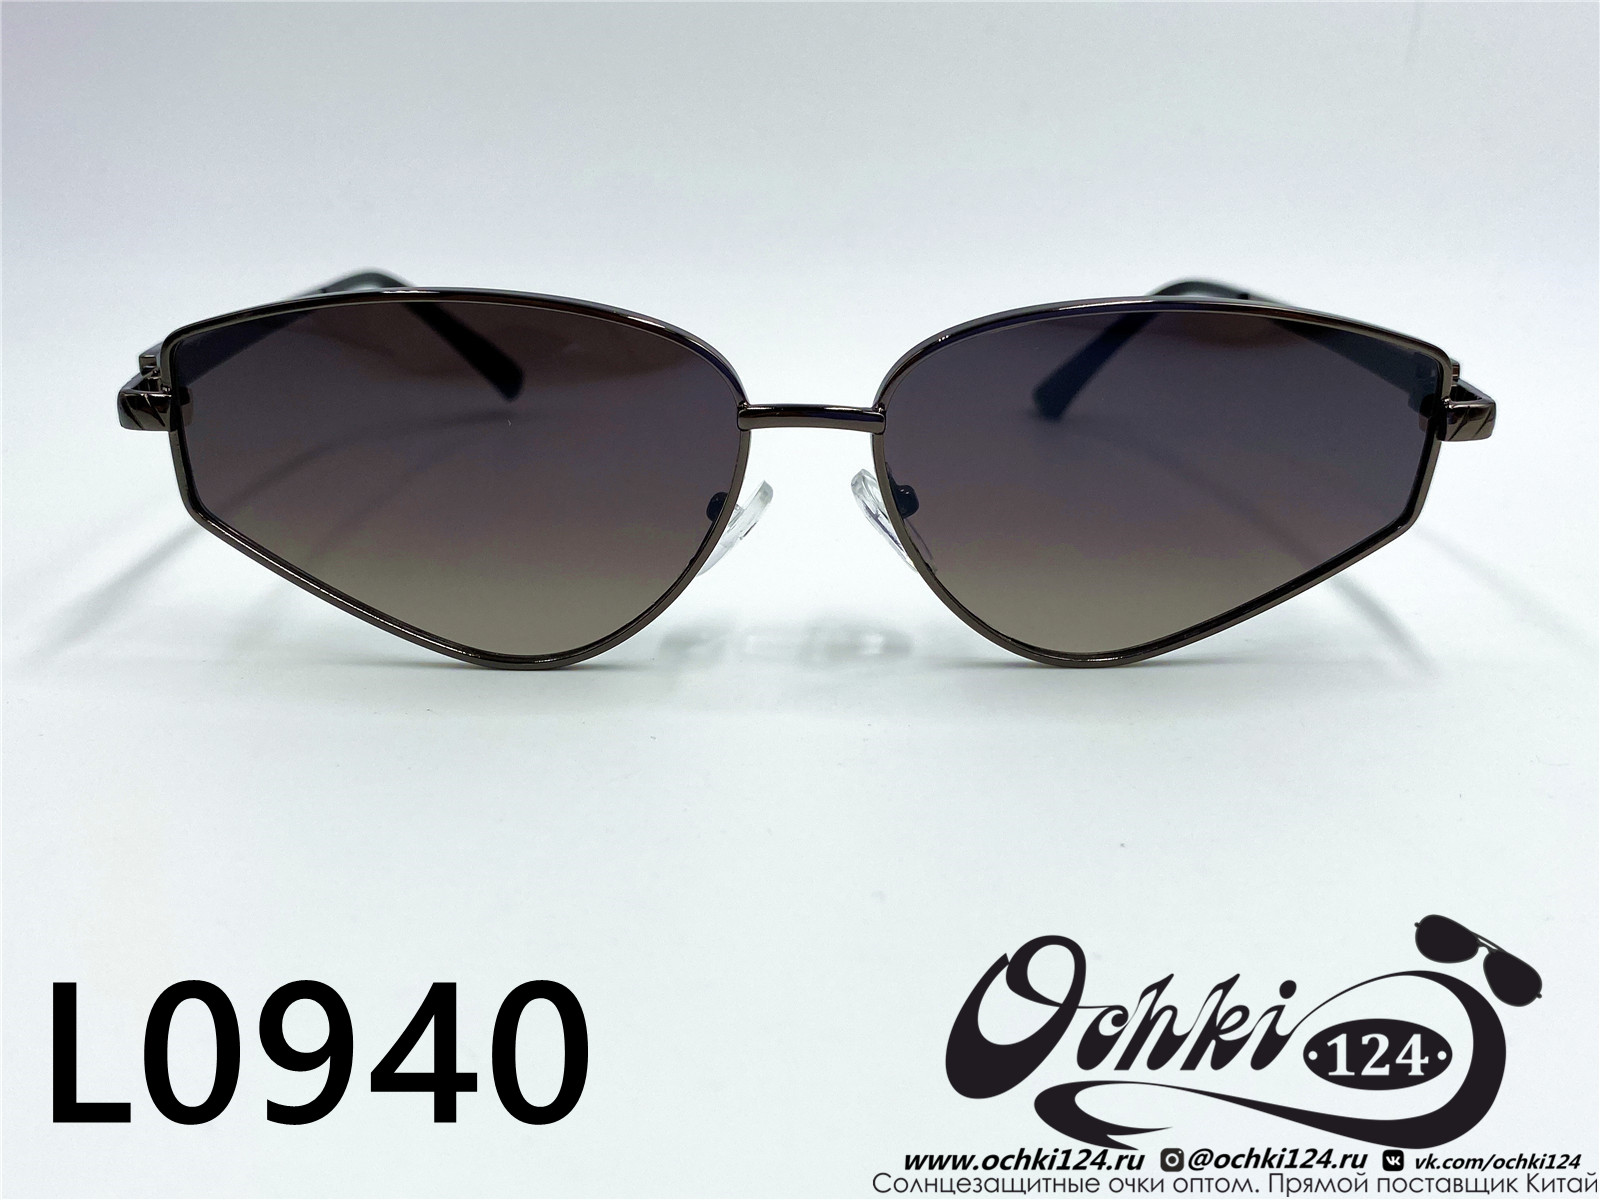  Солнцезащитные очки картинка 2022 Женские Лисички L0940-6 